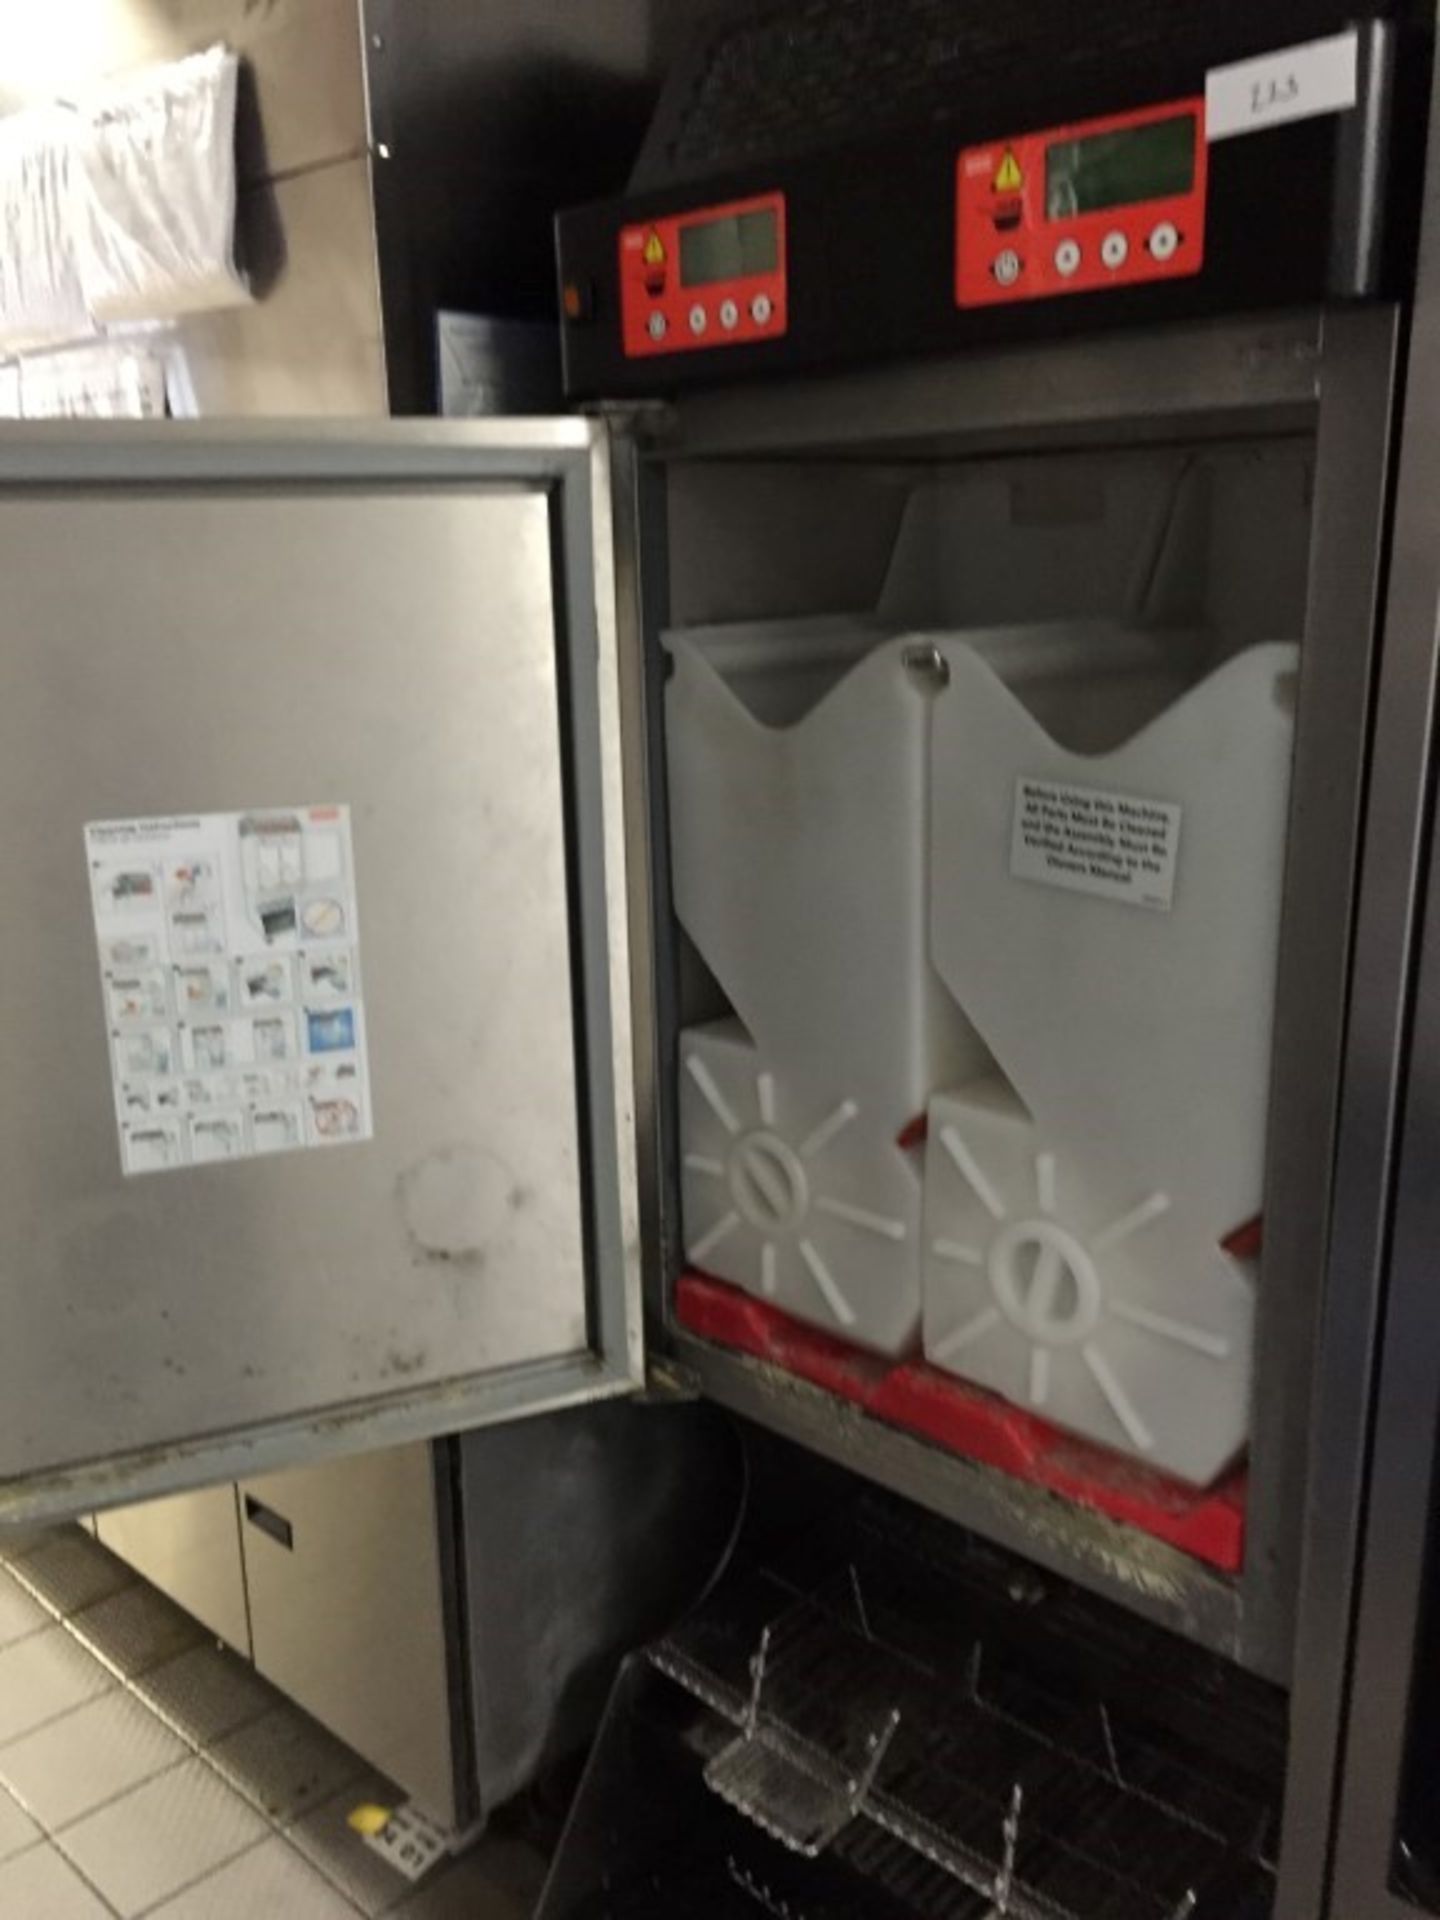 1 x Franke Frozen Food Product Dispenser – Model FD3 - Unique Dispensing system Ensuring Frozen Food - Image 2 of 5